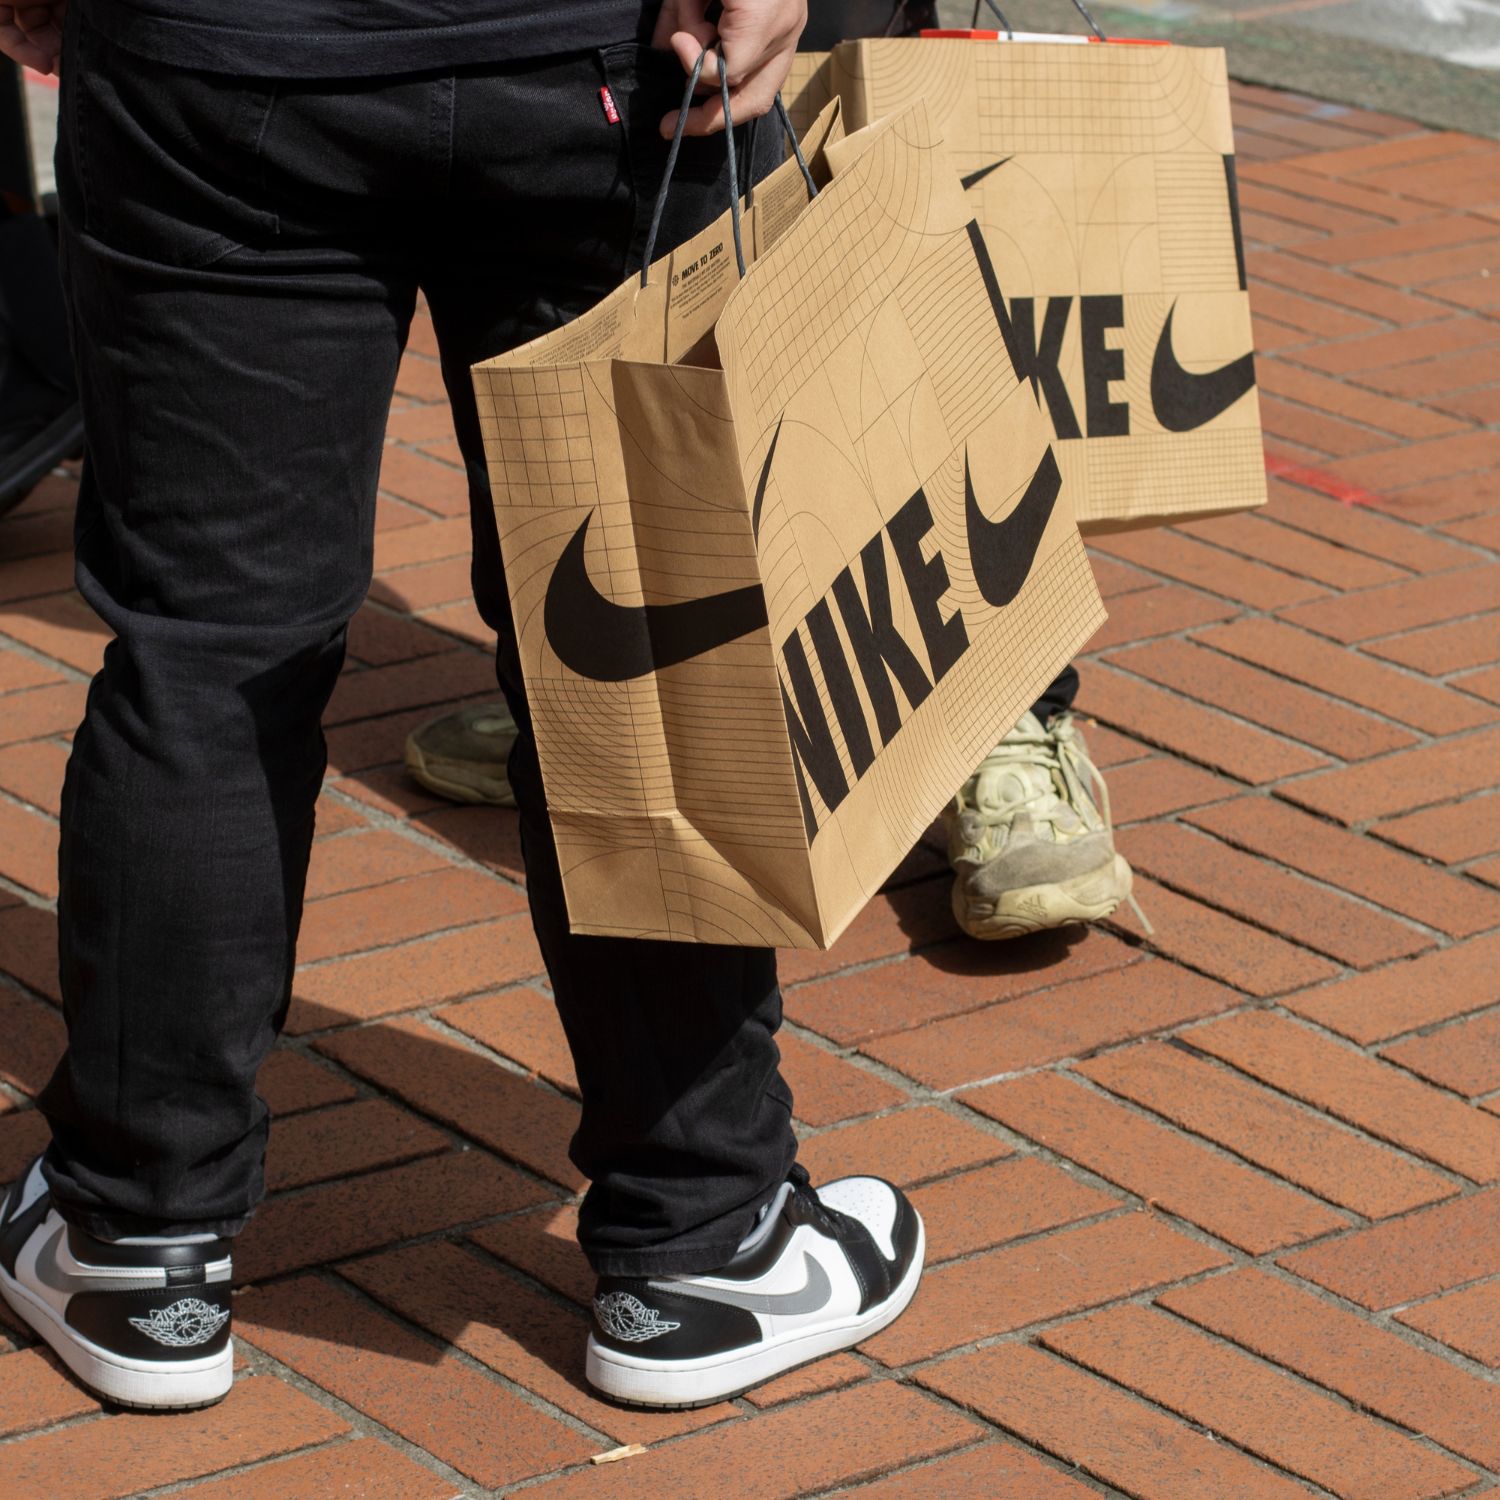 Sac de shopping de la marque Nike © Shutterstock